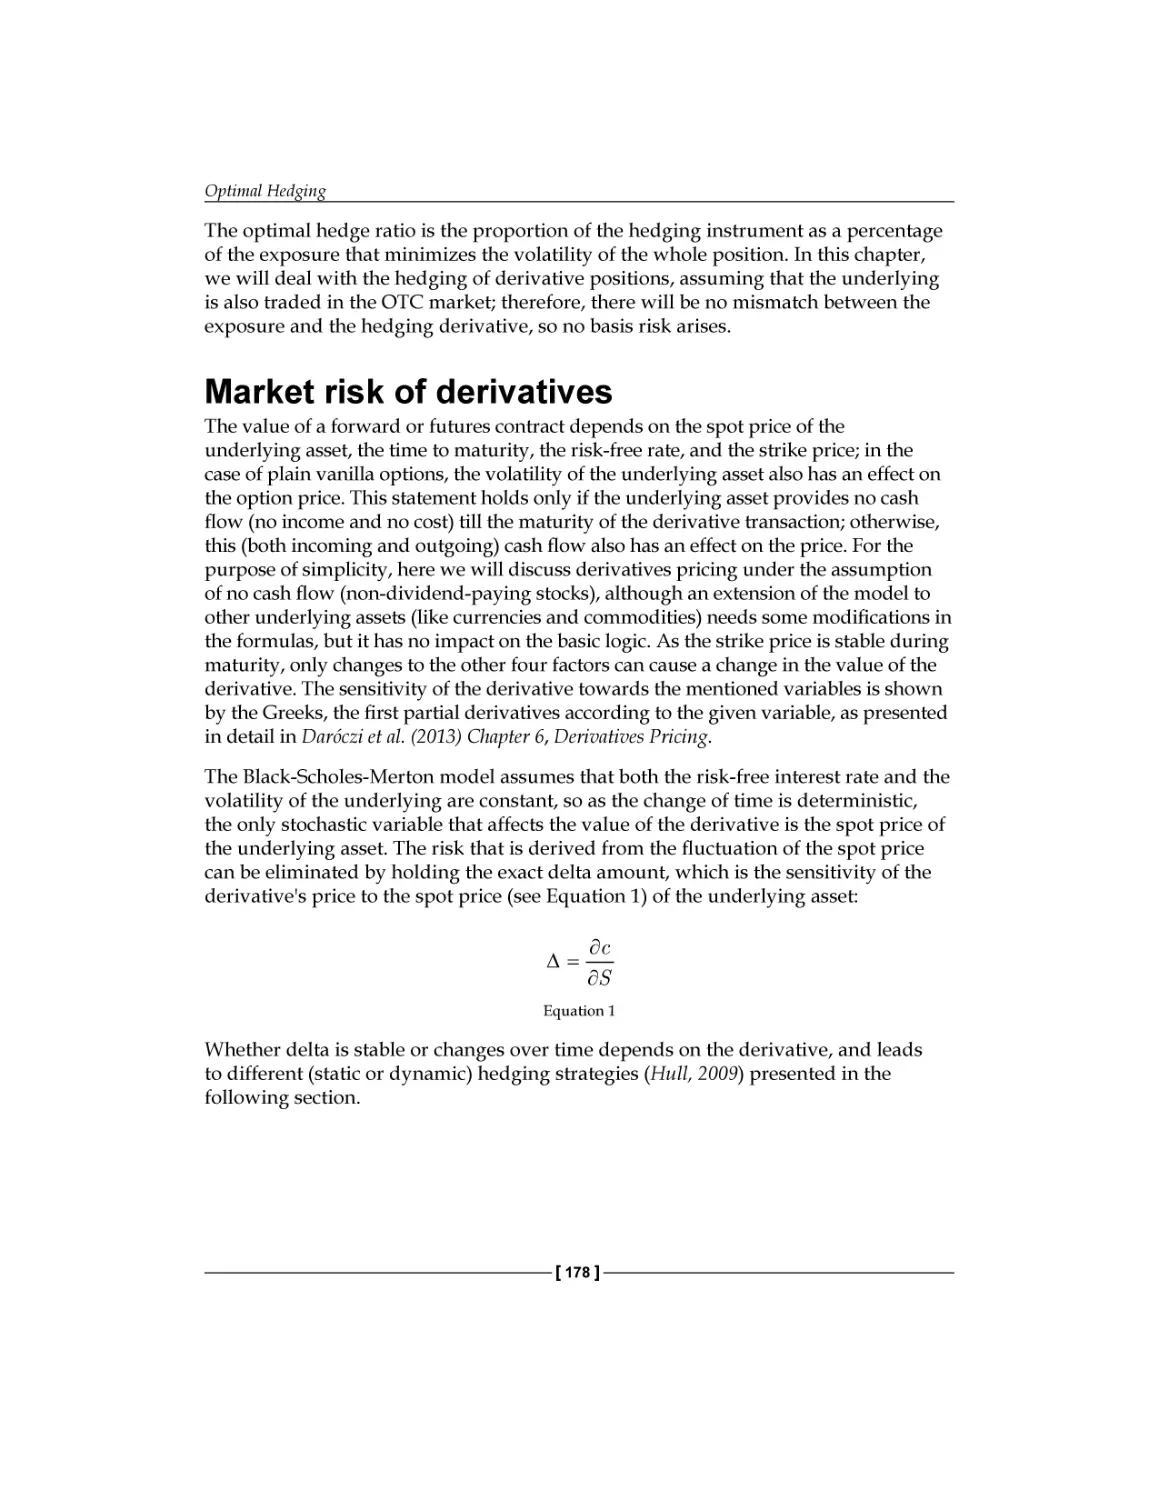 Market risk of derivatives